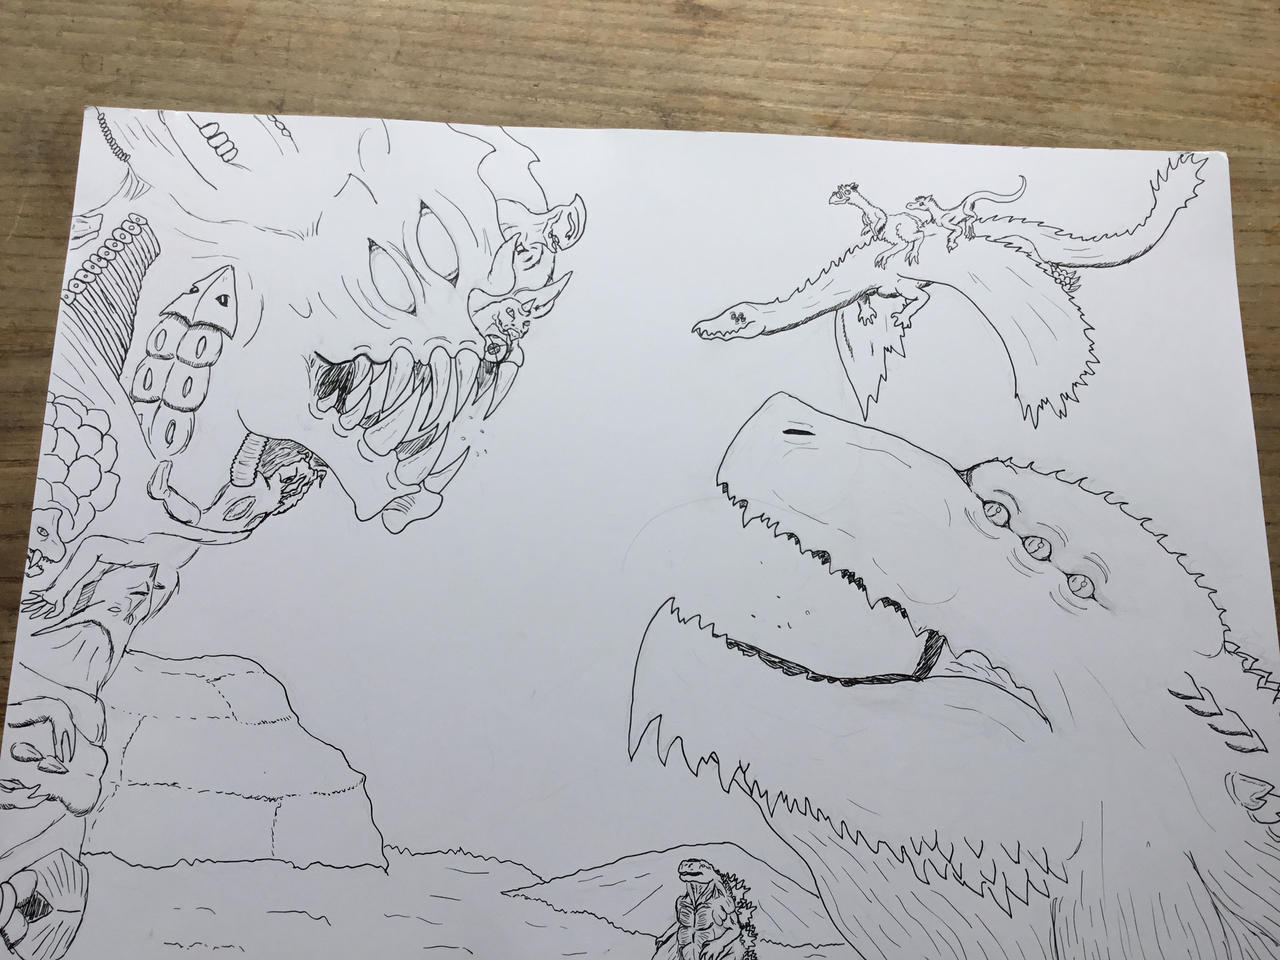 Godzilla Earth vs Daijinryuu/Serpentera by Anicomicgeek on DeviantArt